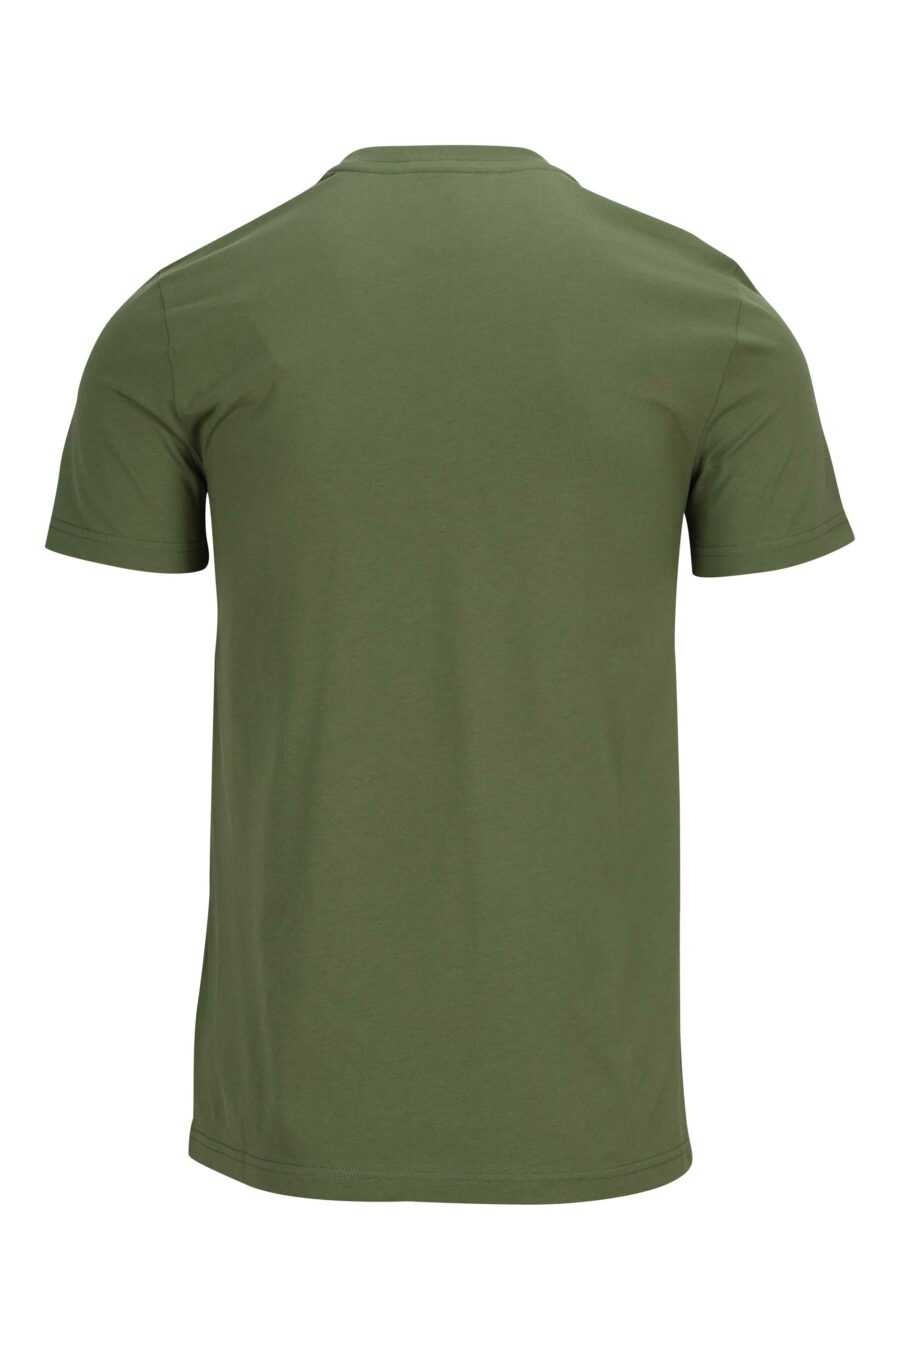 Moschino - Camiseta verde militar de algodón orgánico con maxilogo ...